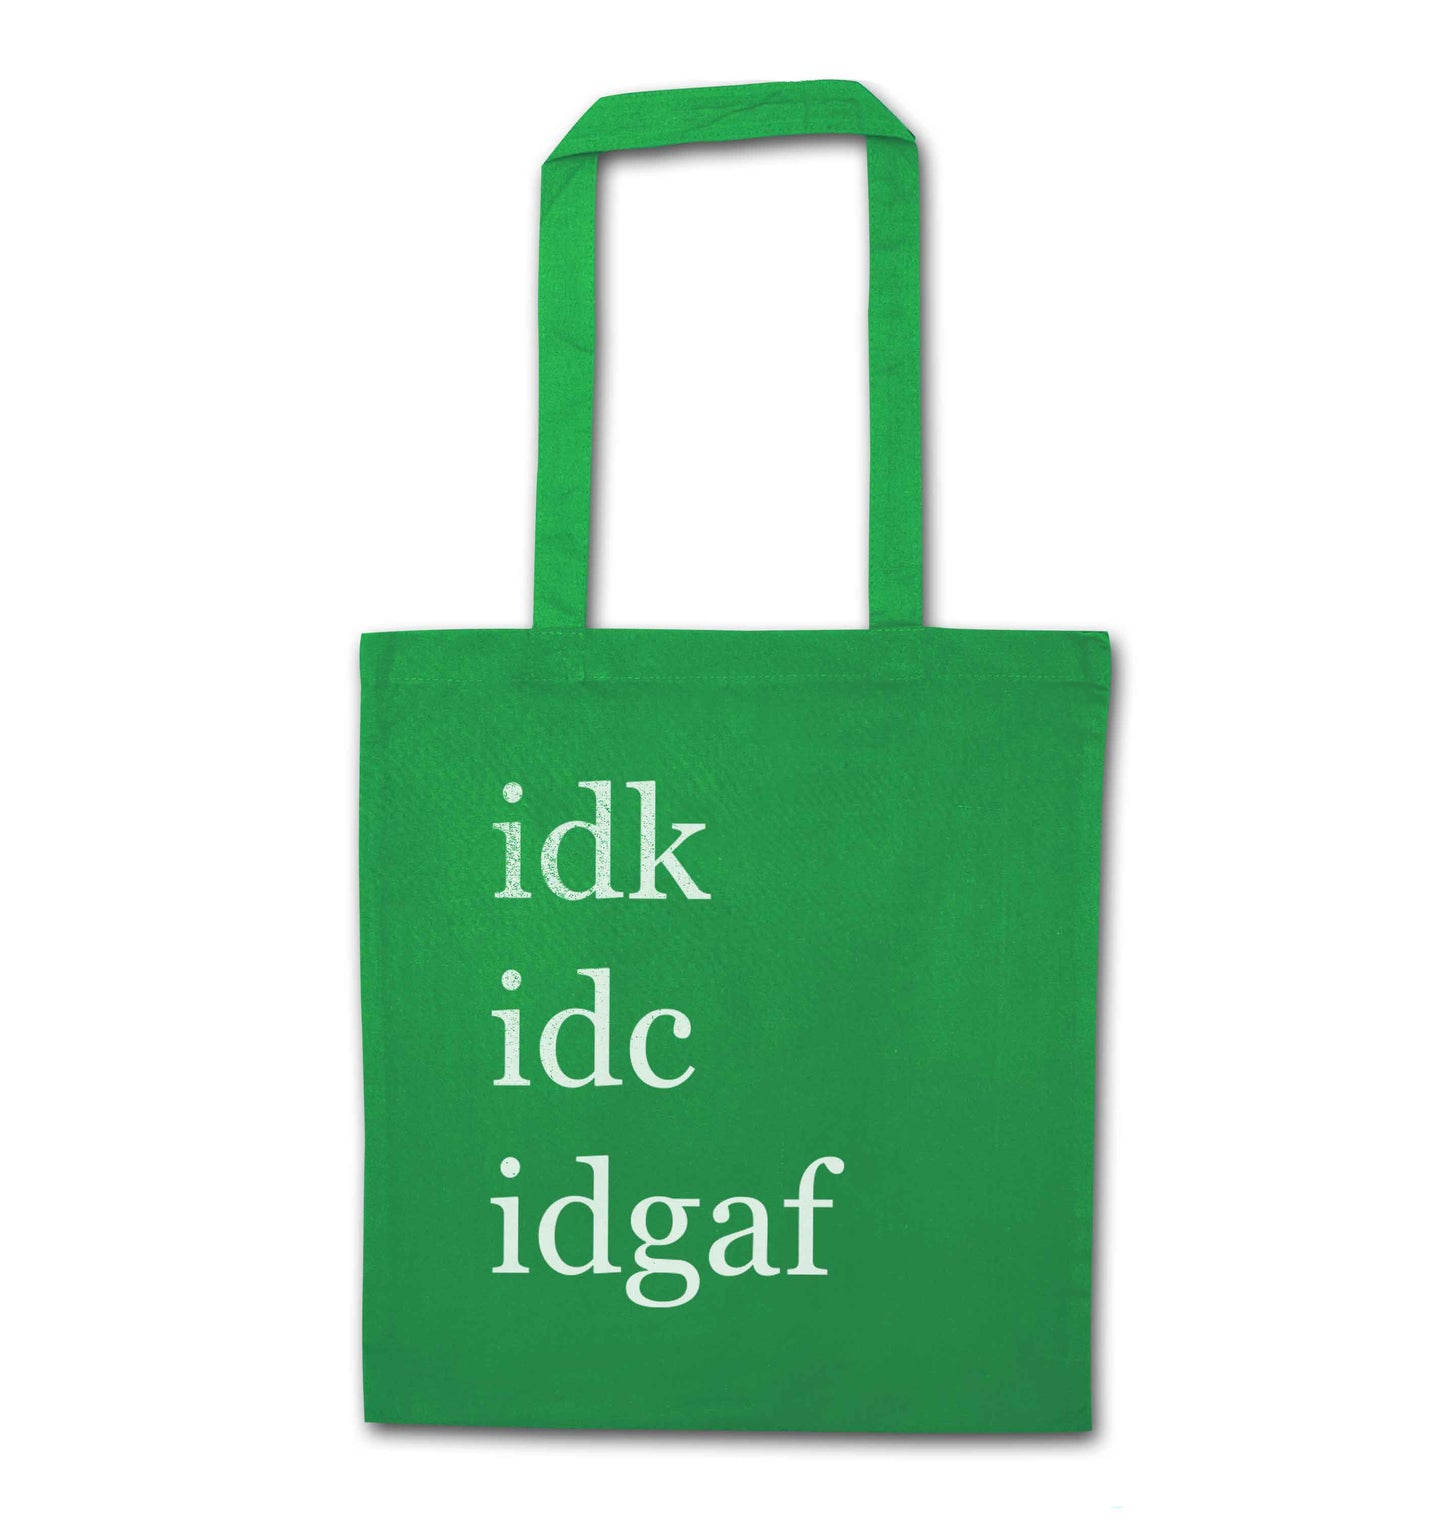 Idk Idc Idgaf green tote bag